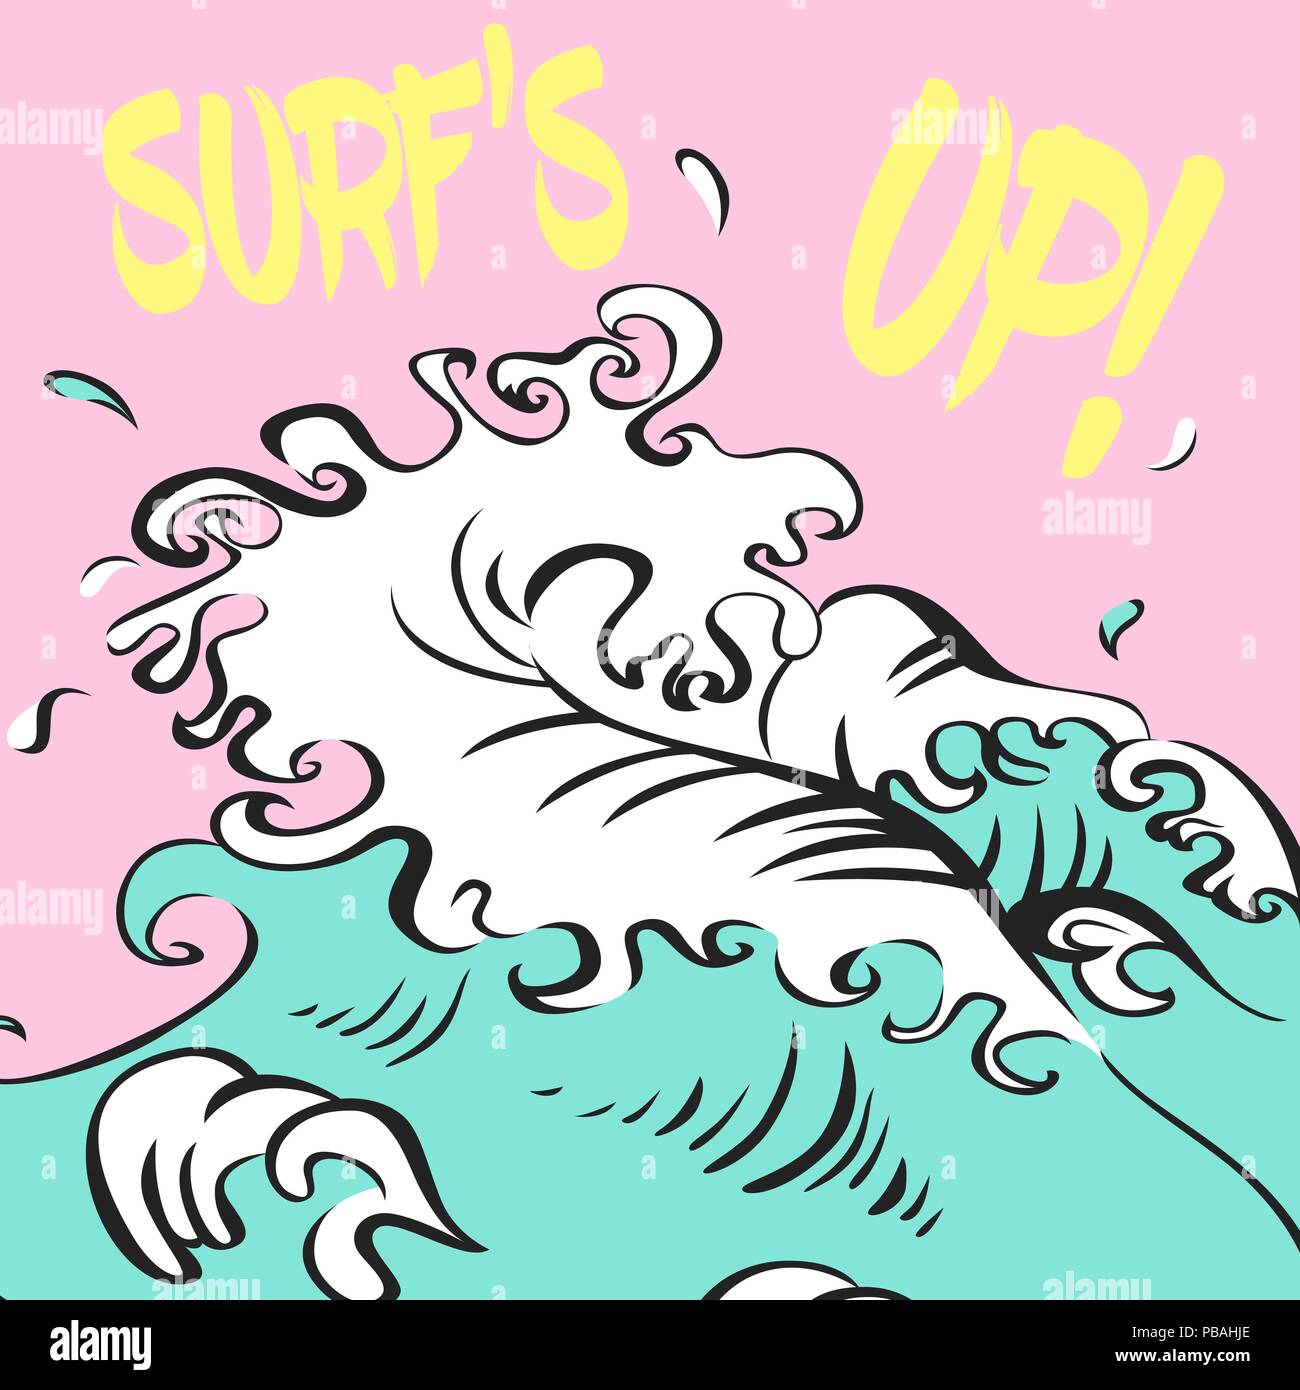 Illustration vecteur de surfs. Grosse Vague sur fond rose. Bannière de surf. Poster Surf.oe Illustration de Vecteur